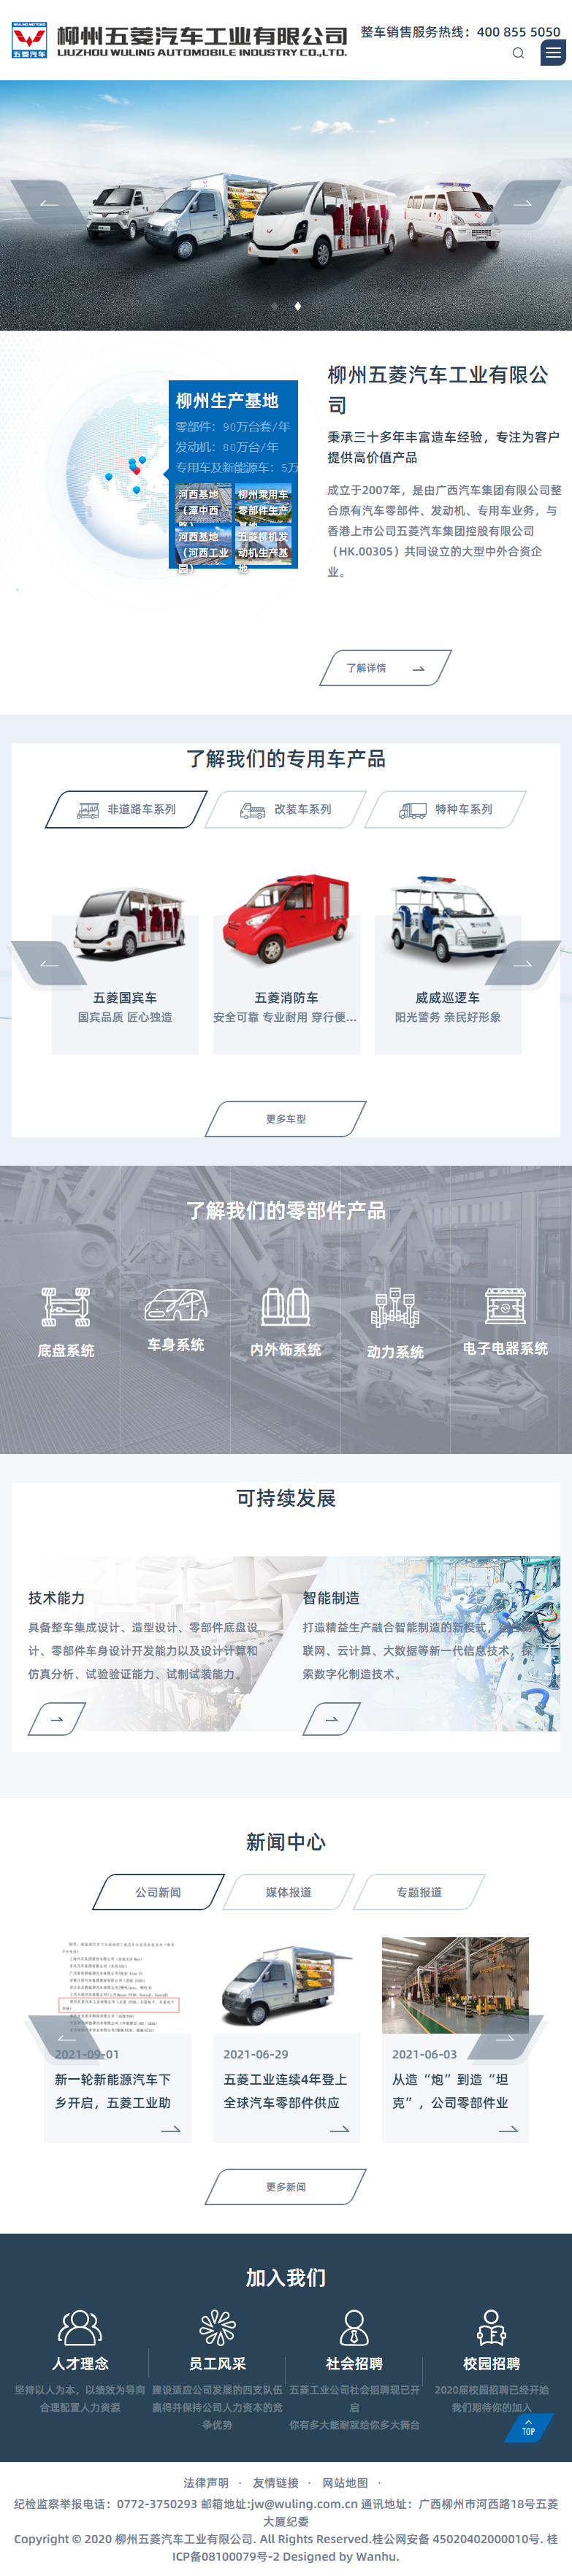 柳州五菱汽车工业有限公司网站案例